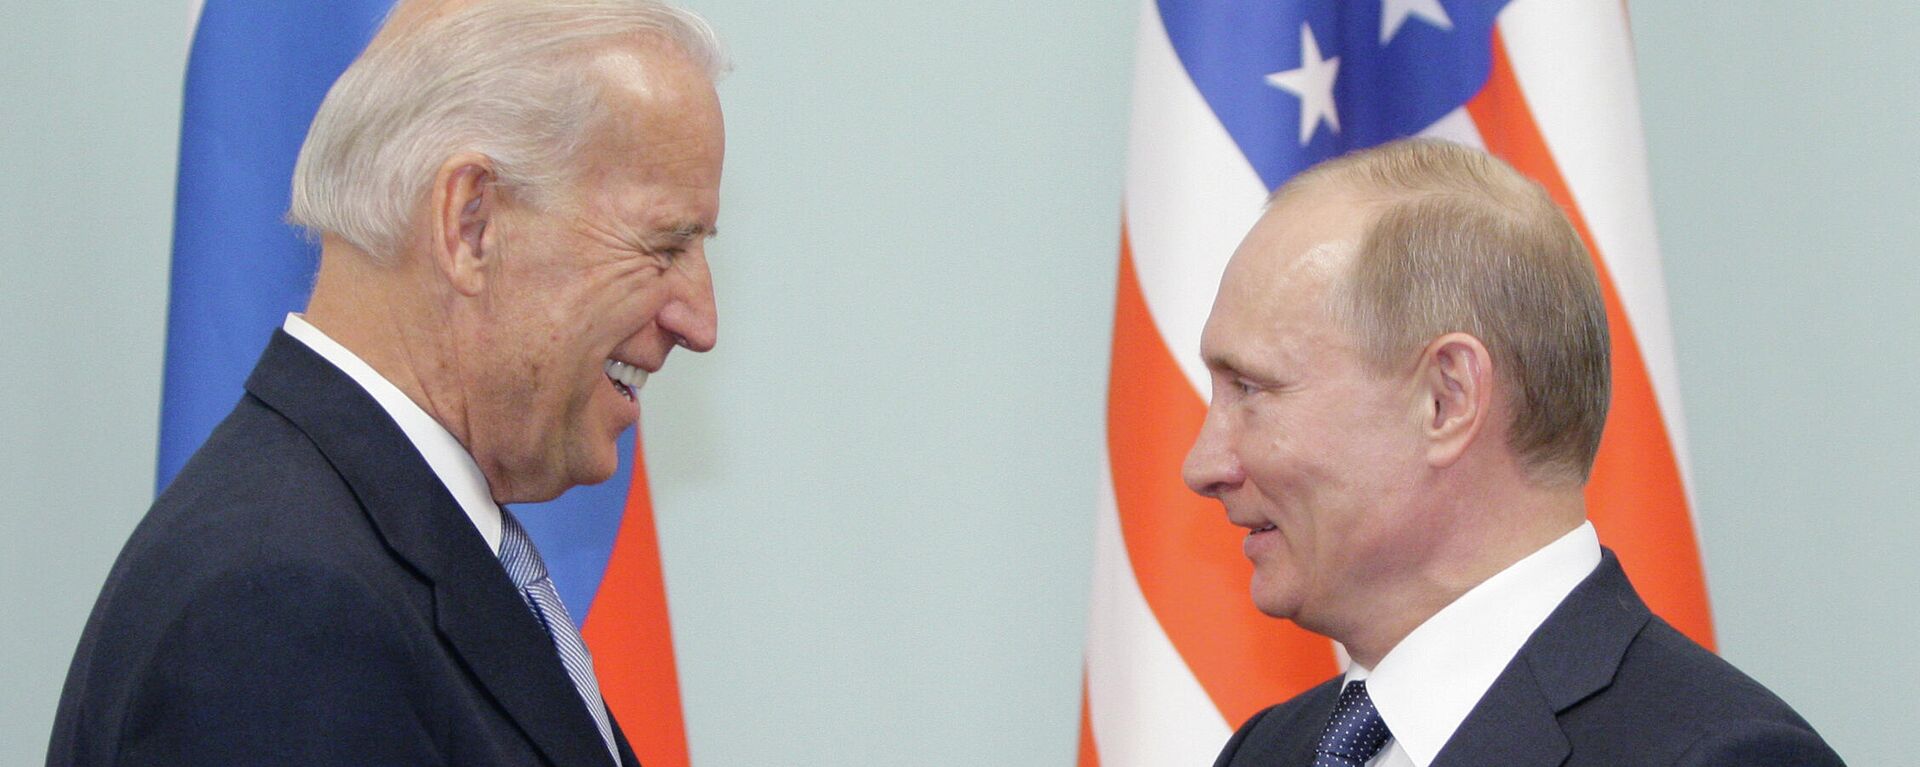 Joe Biden, entonces vicepresidente de EEUU, y Vladímir Putin, entonces primer ministro de Rusia, durante un encuentro el 2011 - Sputnik Mundo, 1920, 15.06.2021